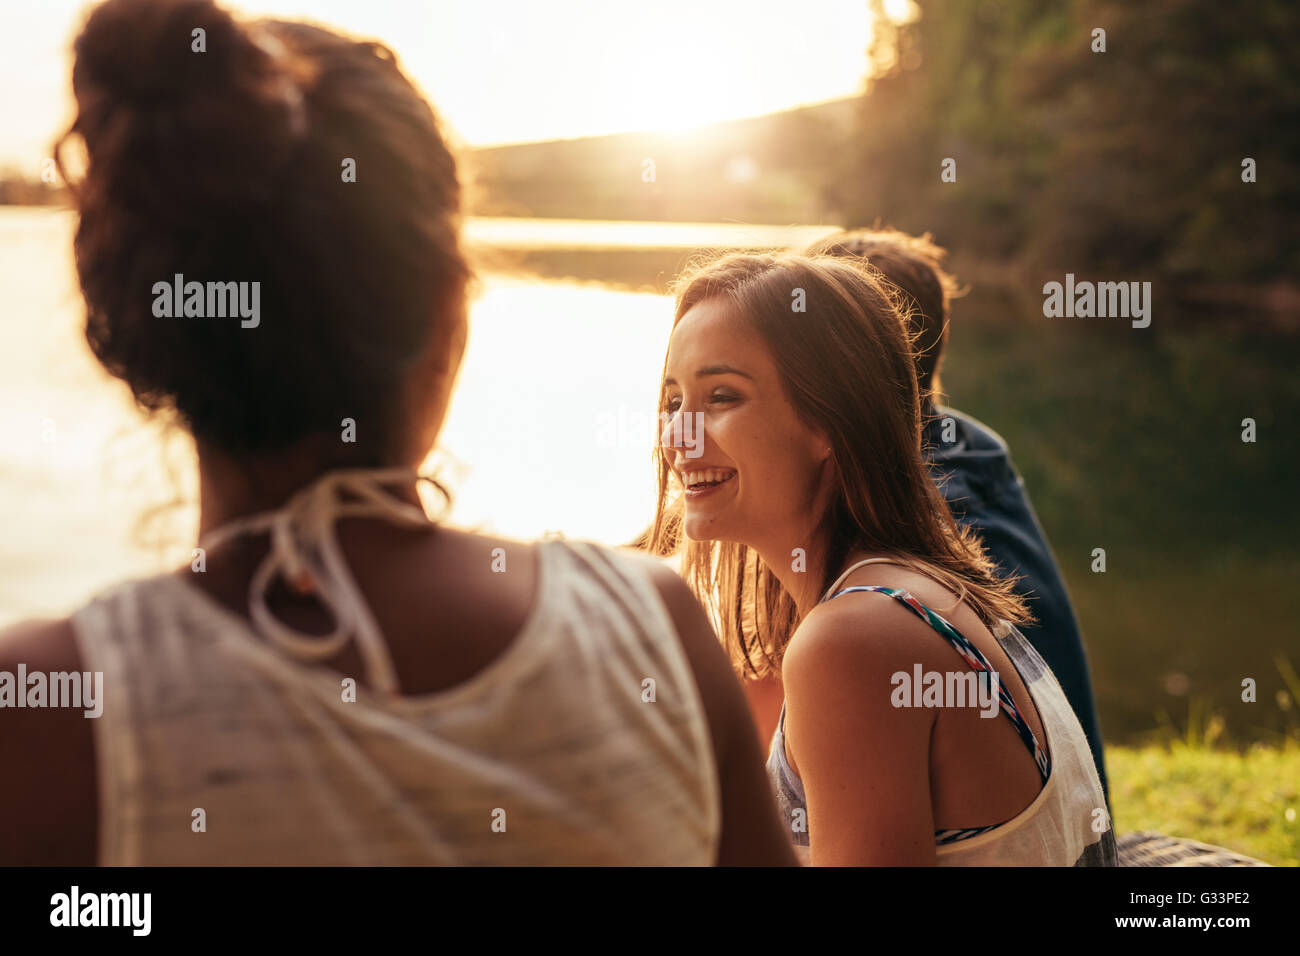 Retrato de mujer joven feliz sentado a la orilla de un lago con sus amigos. Los jóvenes disfrutando de un día en el lago. Foto de stock